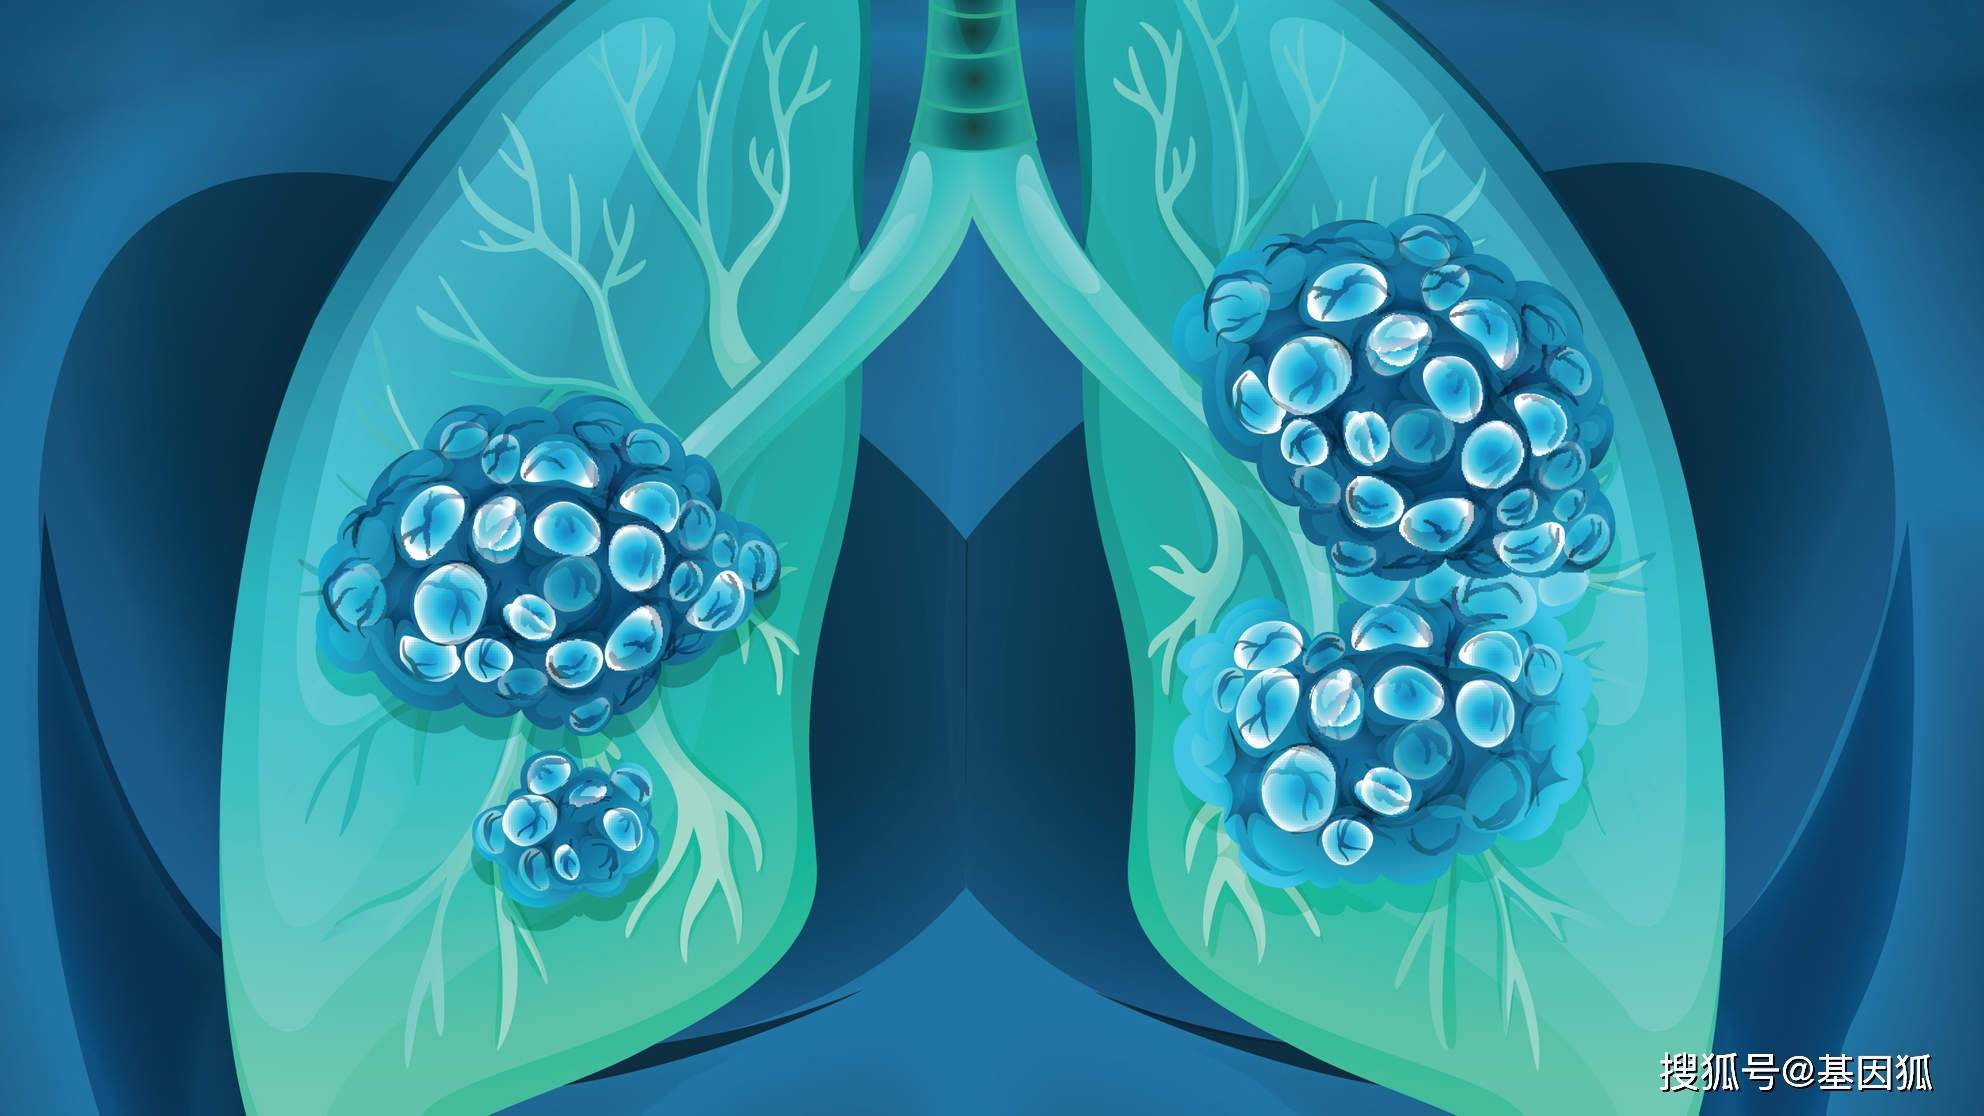 爱肺计划丨一图教你读懂肺癌高危人群免费筛查那些事儿-搜狐